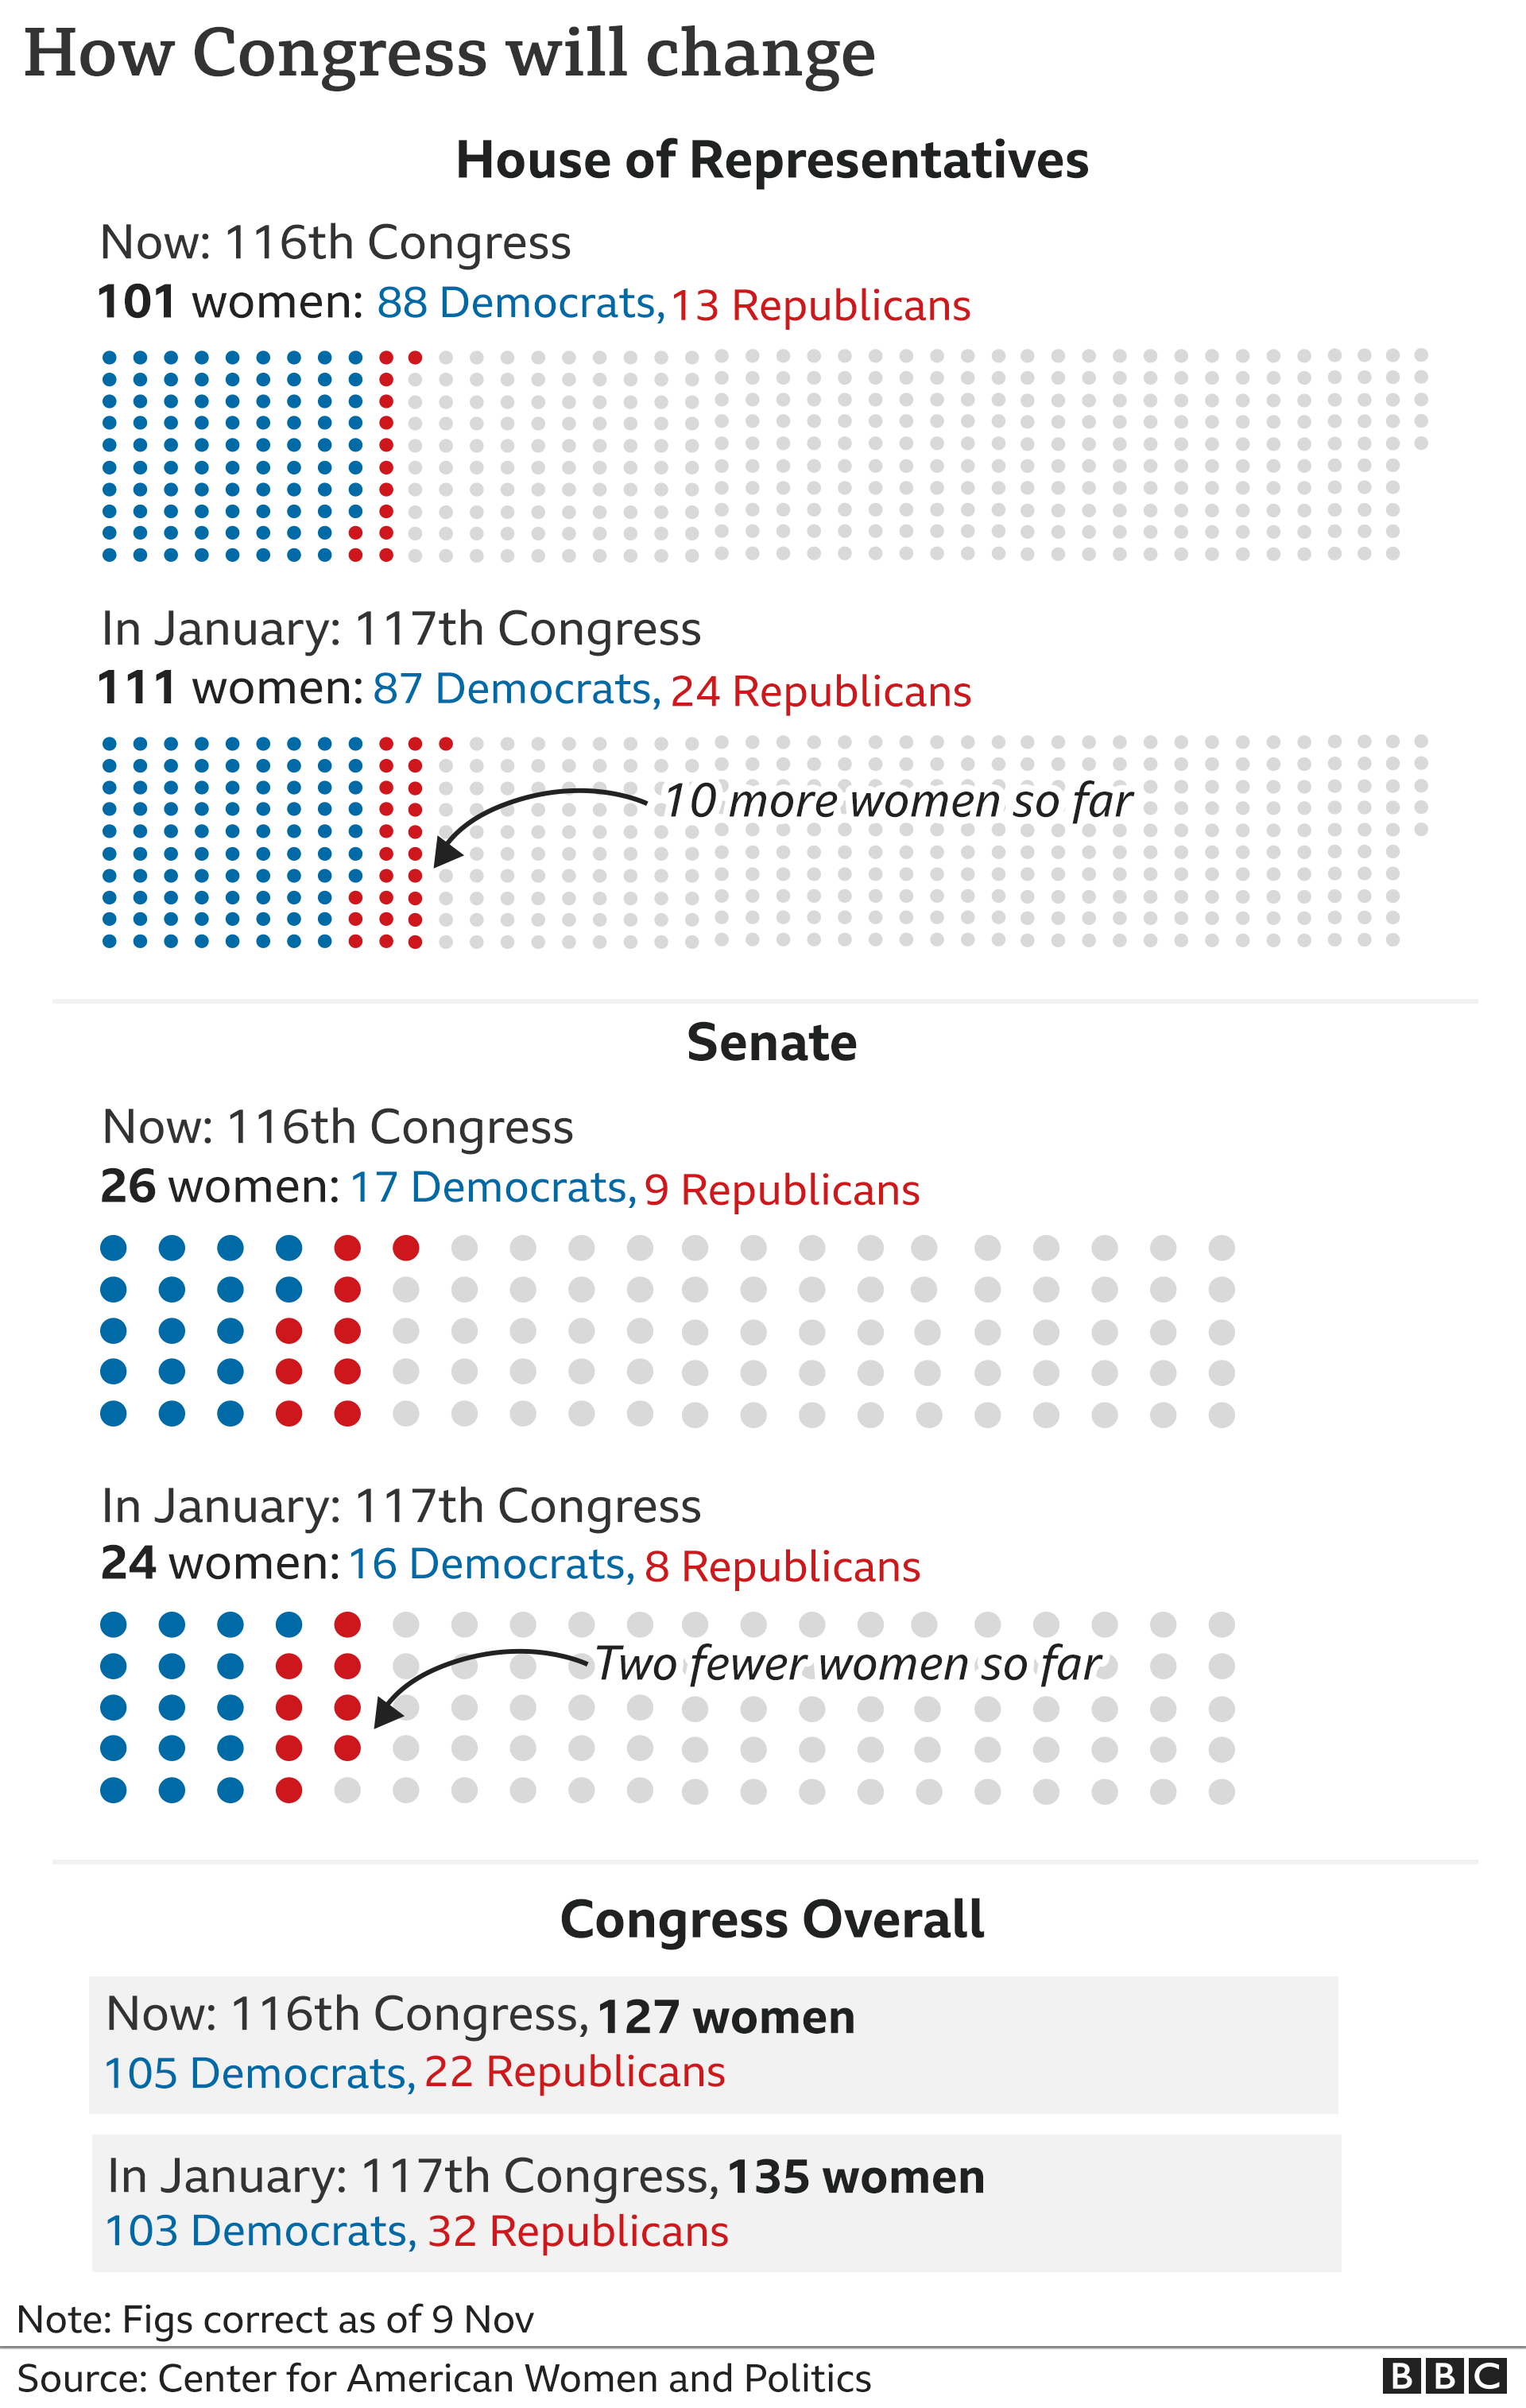 График, показывающий изменение числа женщин в Конгрессе с настоящего момента до 2021 года